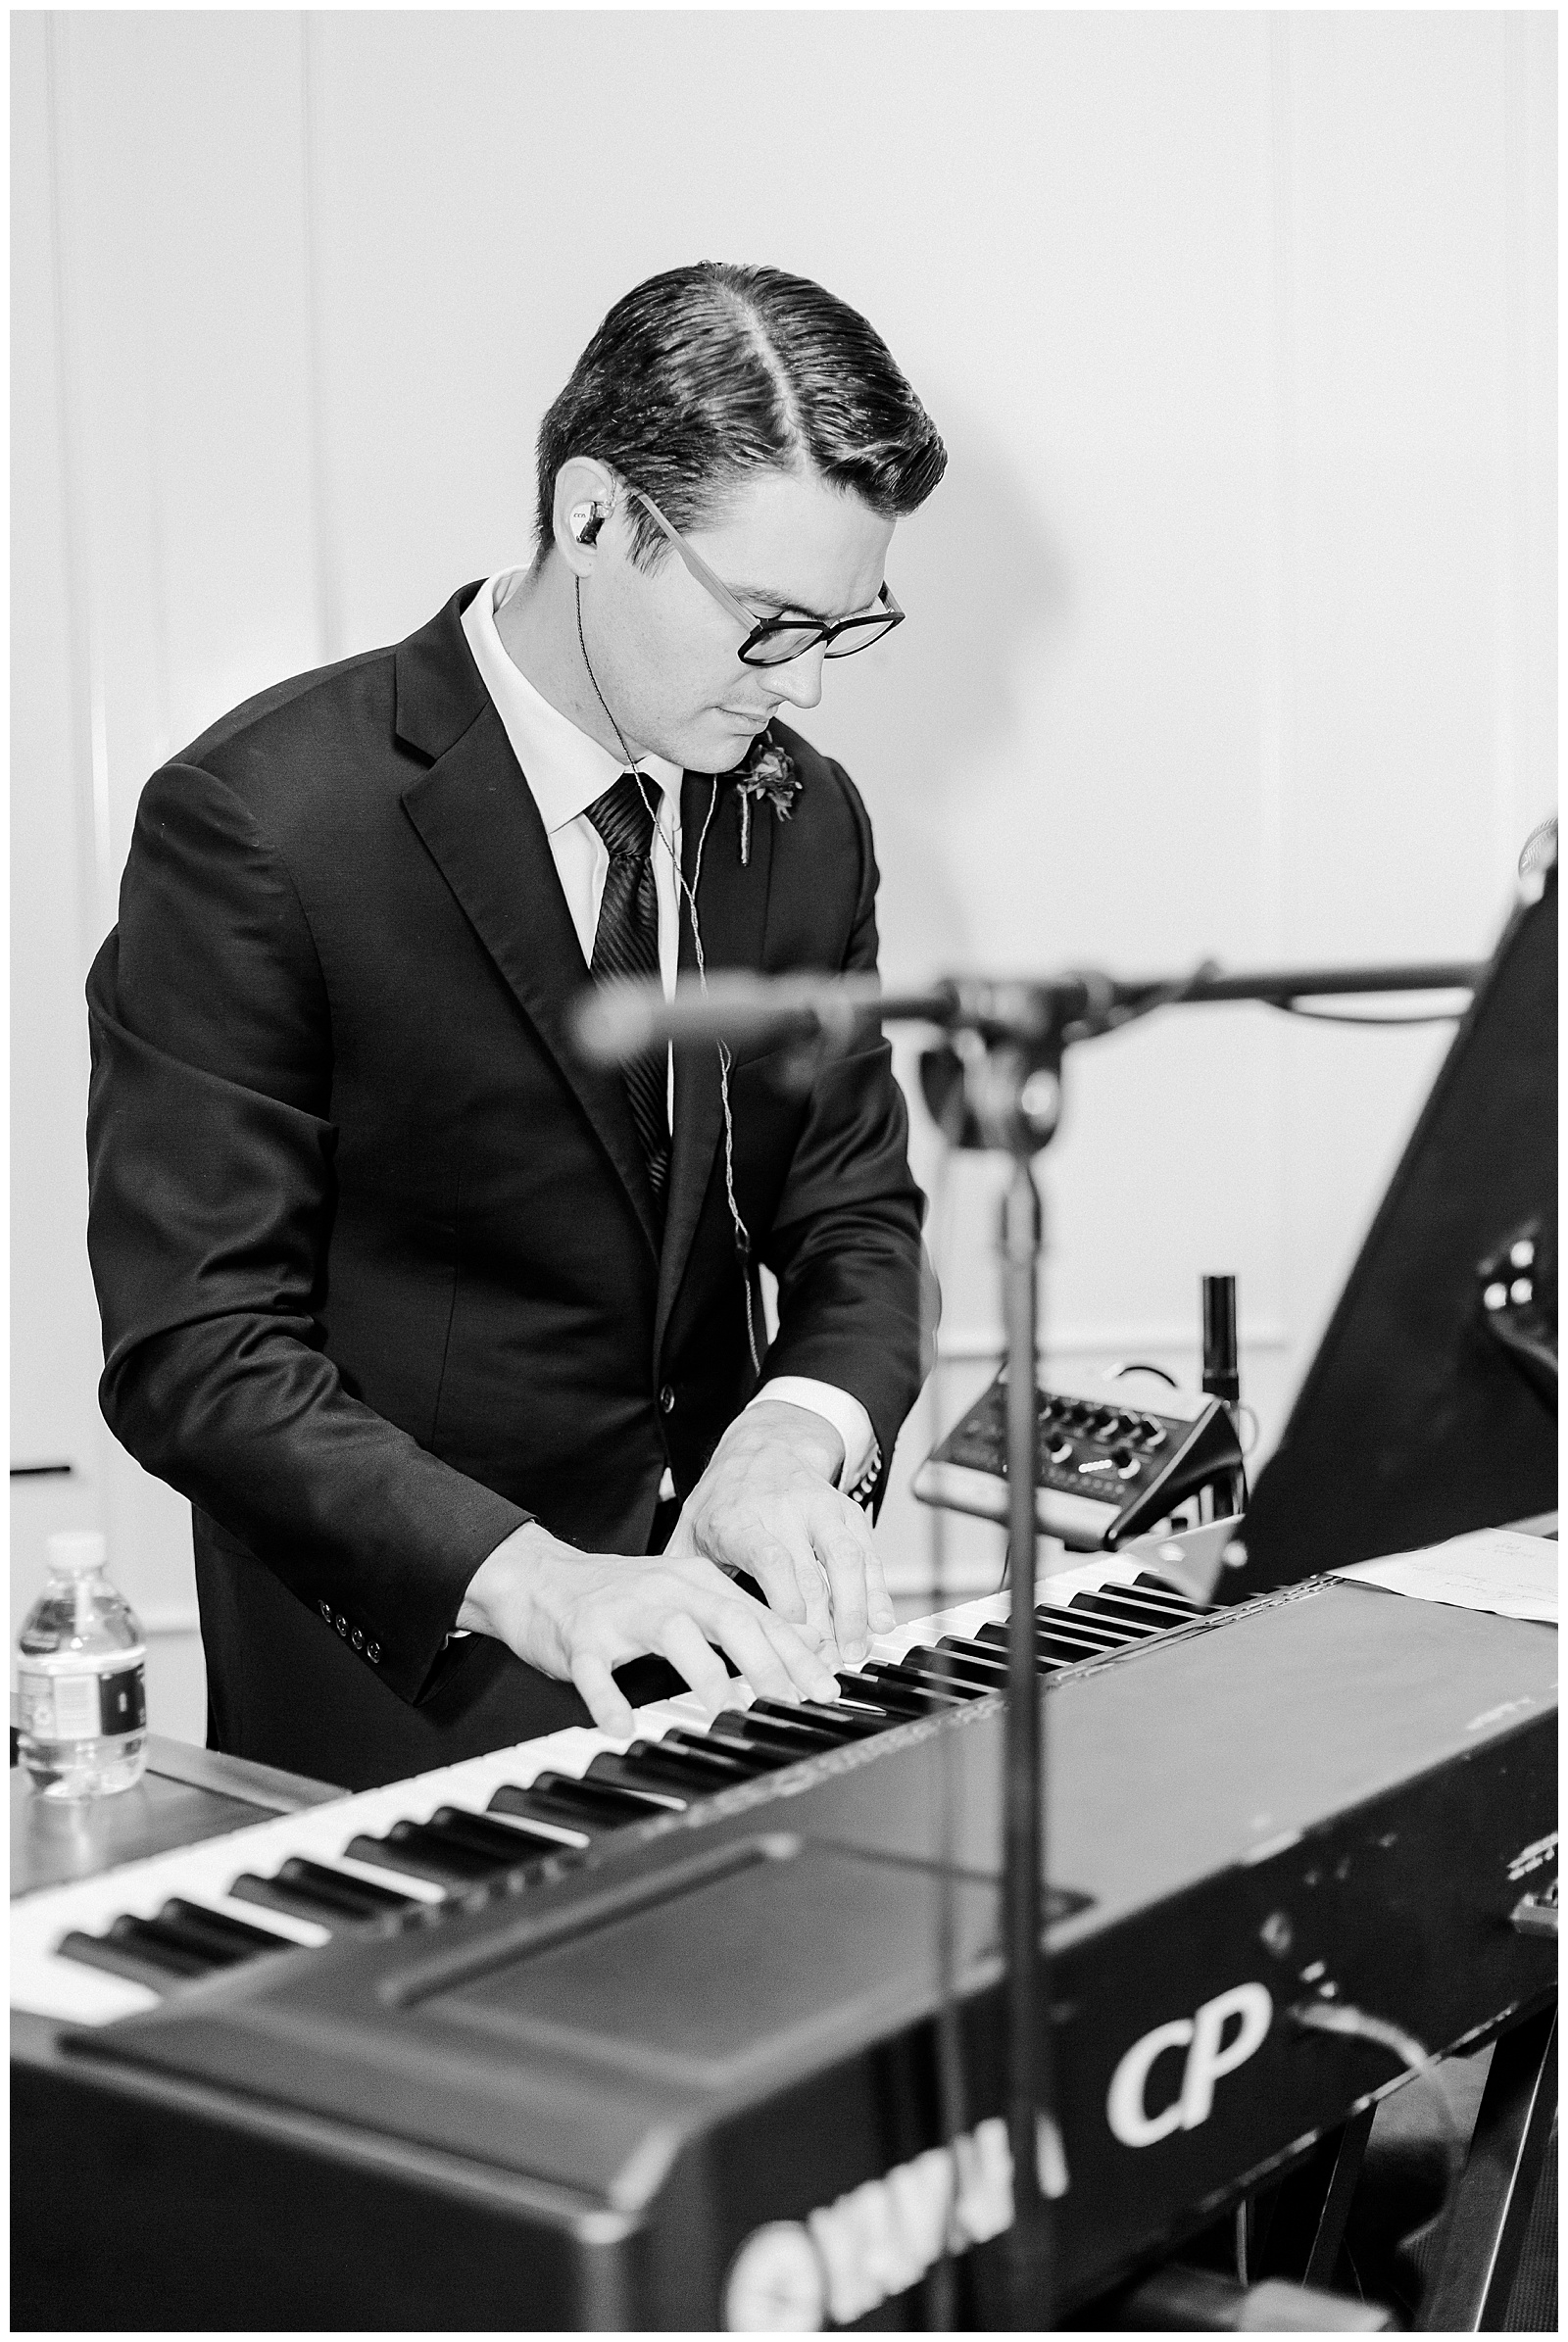 Musician playing piano at wedding